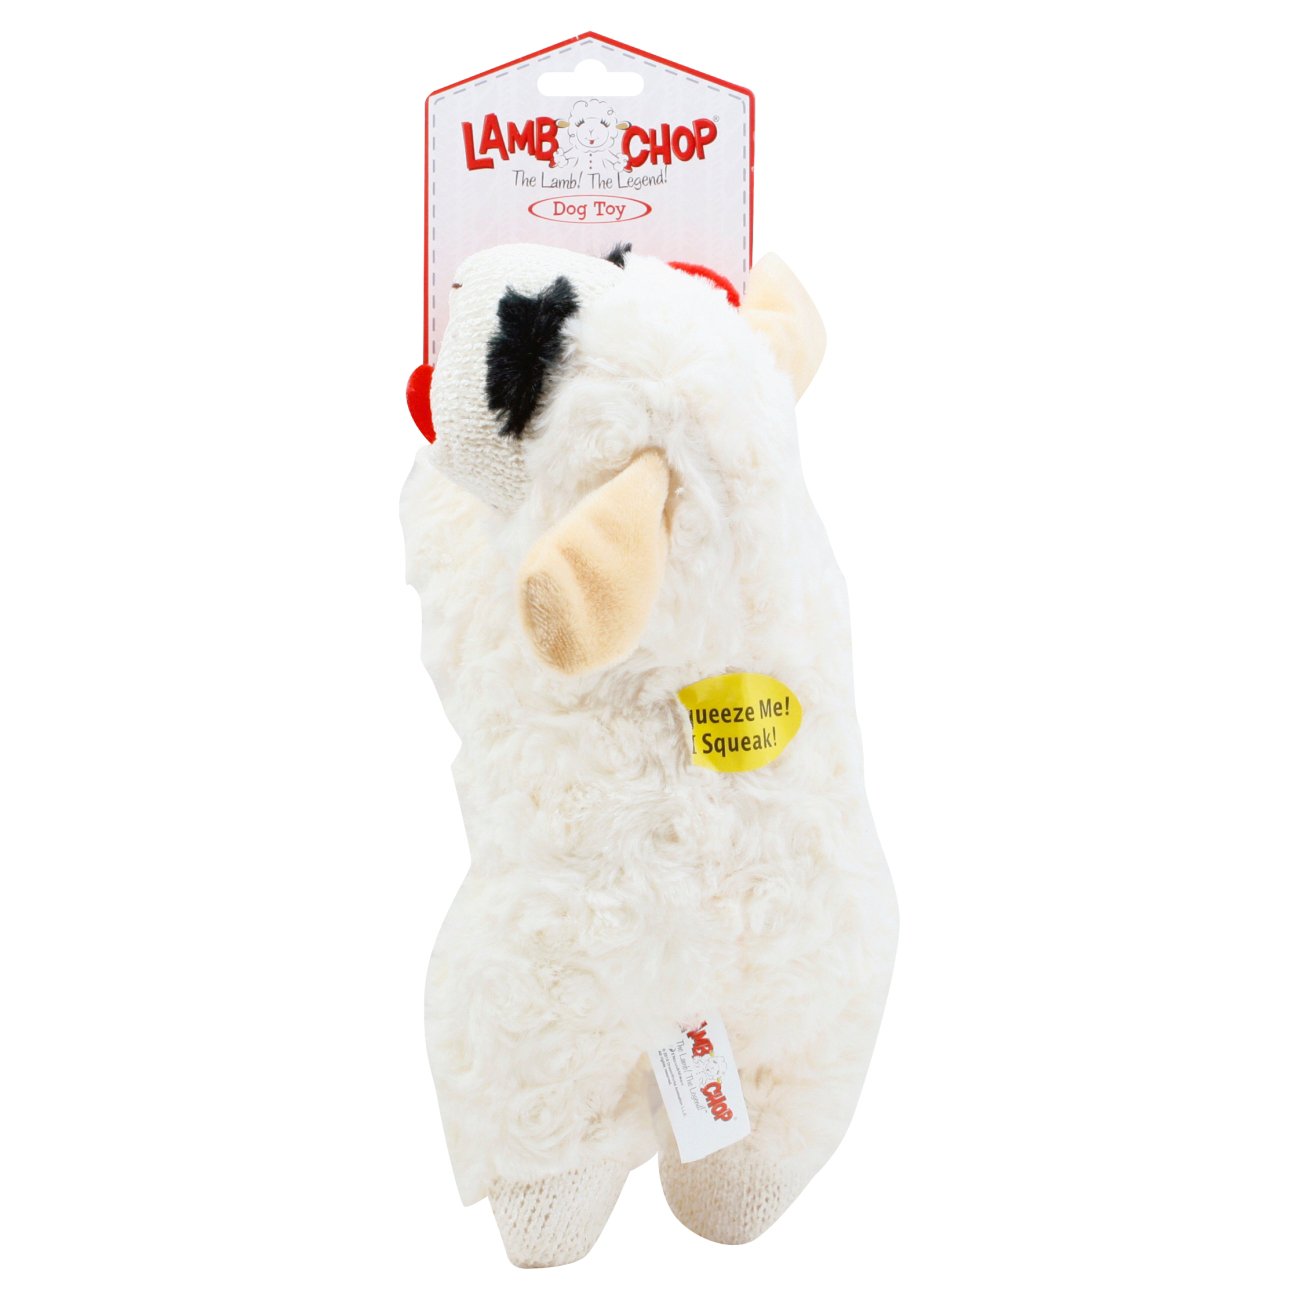 lamb chop toy